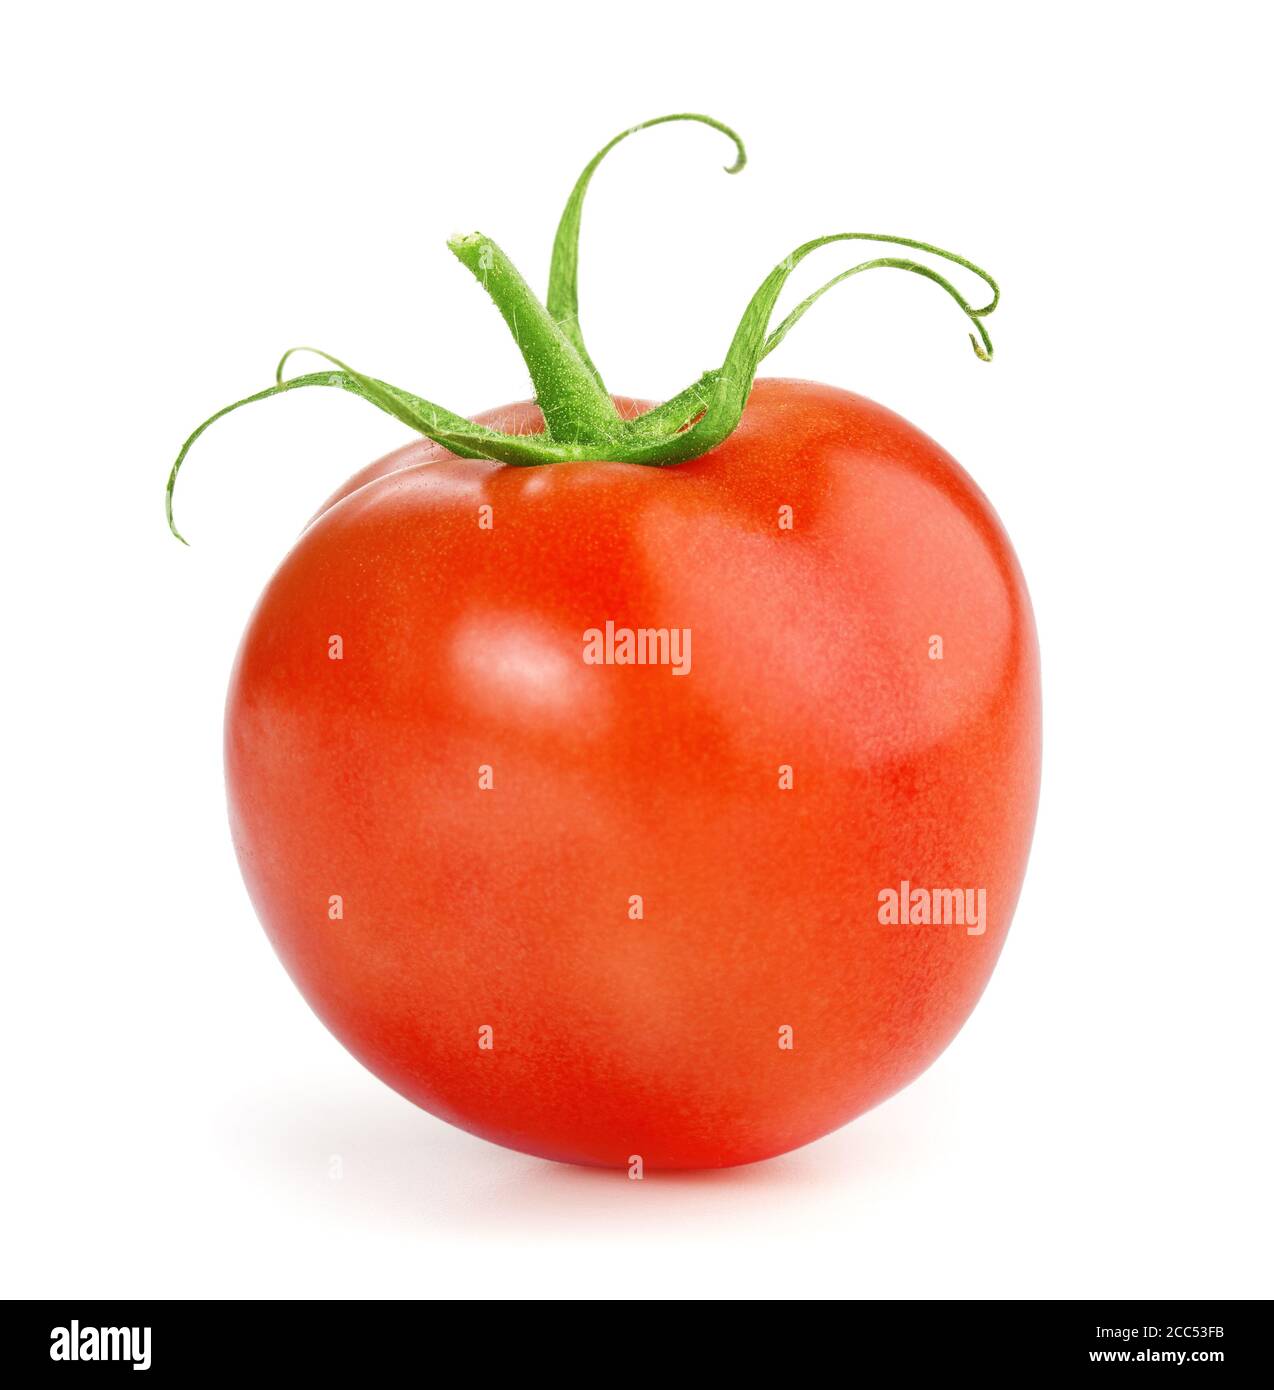 one ripe tomato isolated on white background Stock Photo